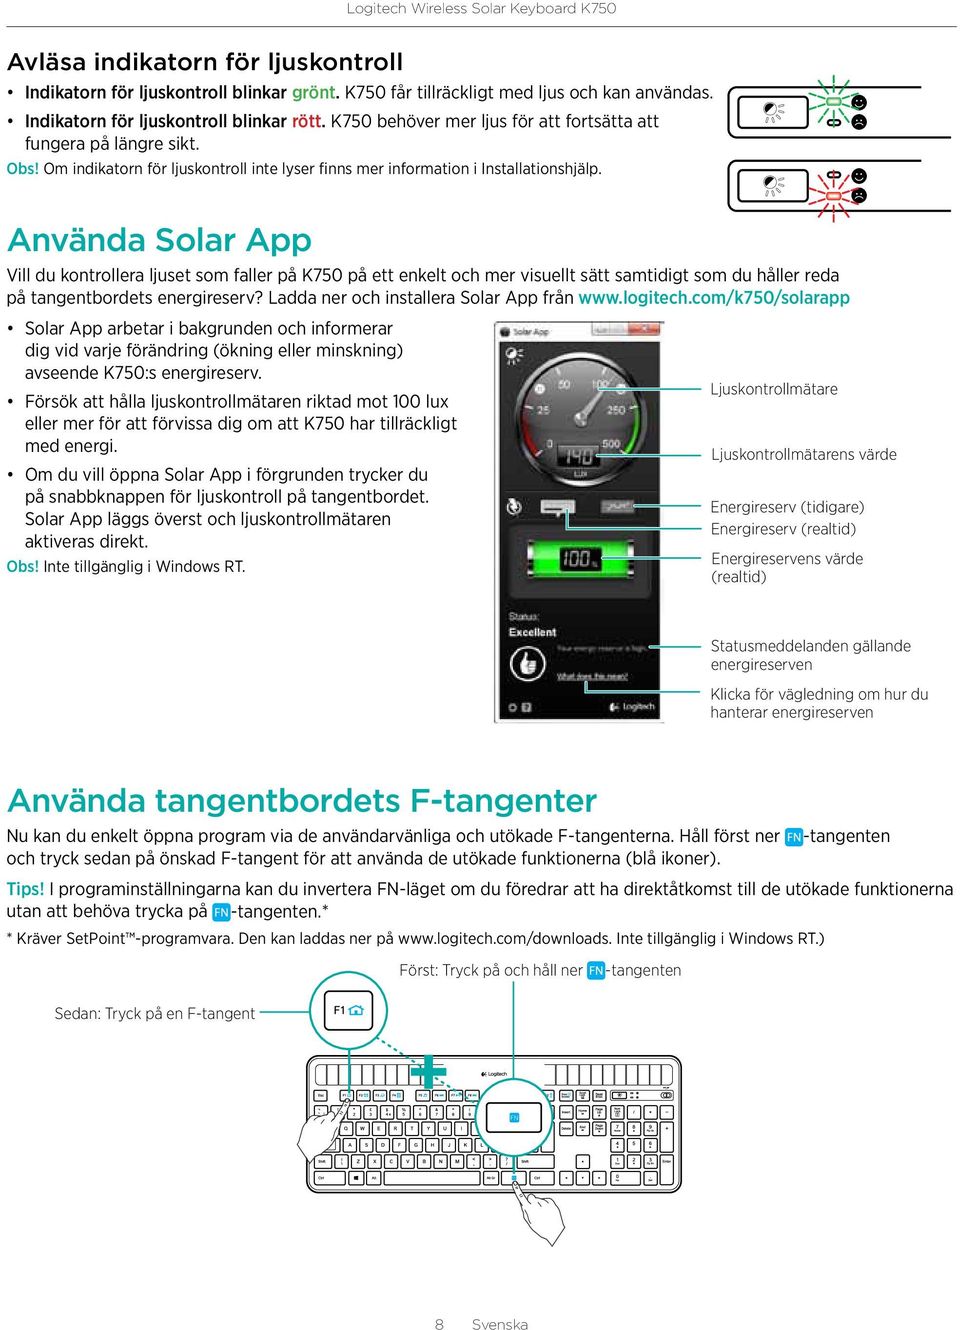 Använda Solar App Vill du kontrollera ljuset som faller på K750 på ett enkelt och mer visuellt sätt samtidigt som du håller reda på tangentbordets energireserv?